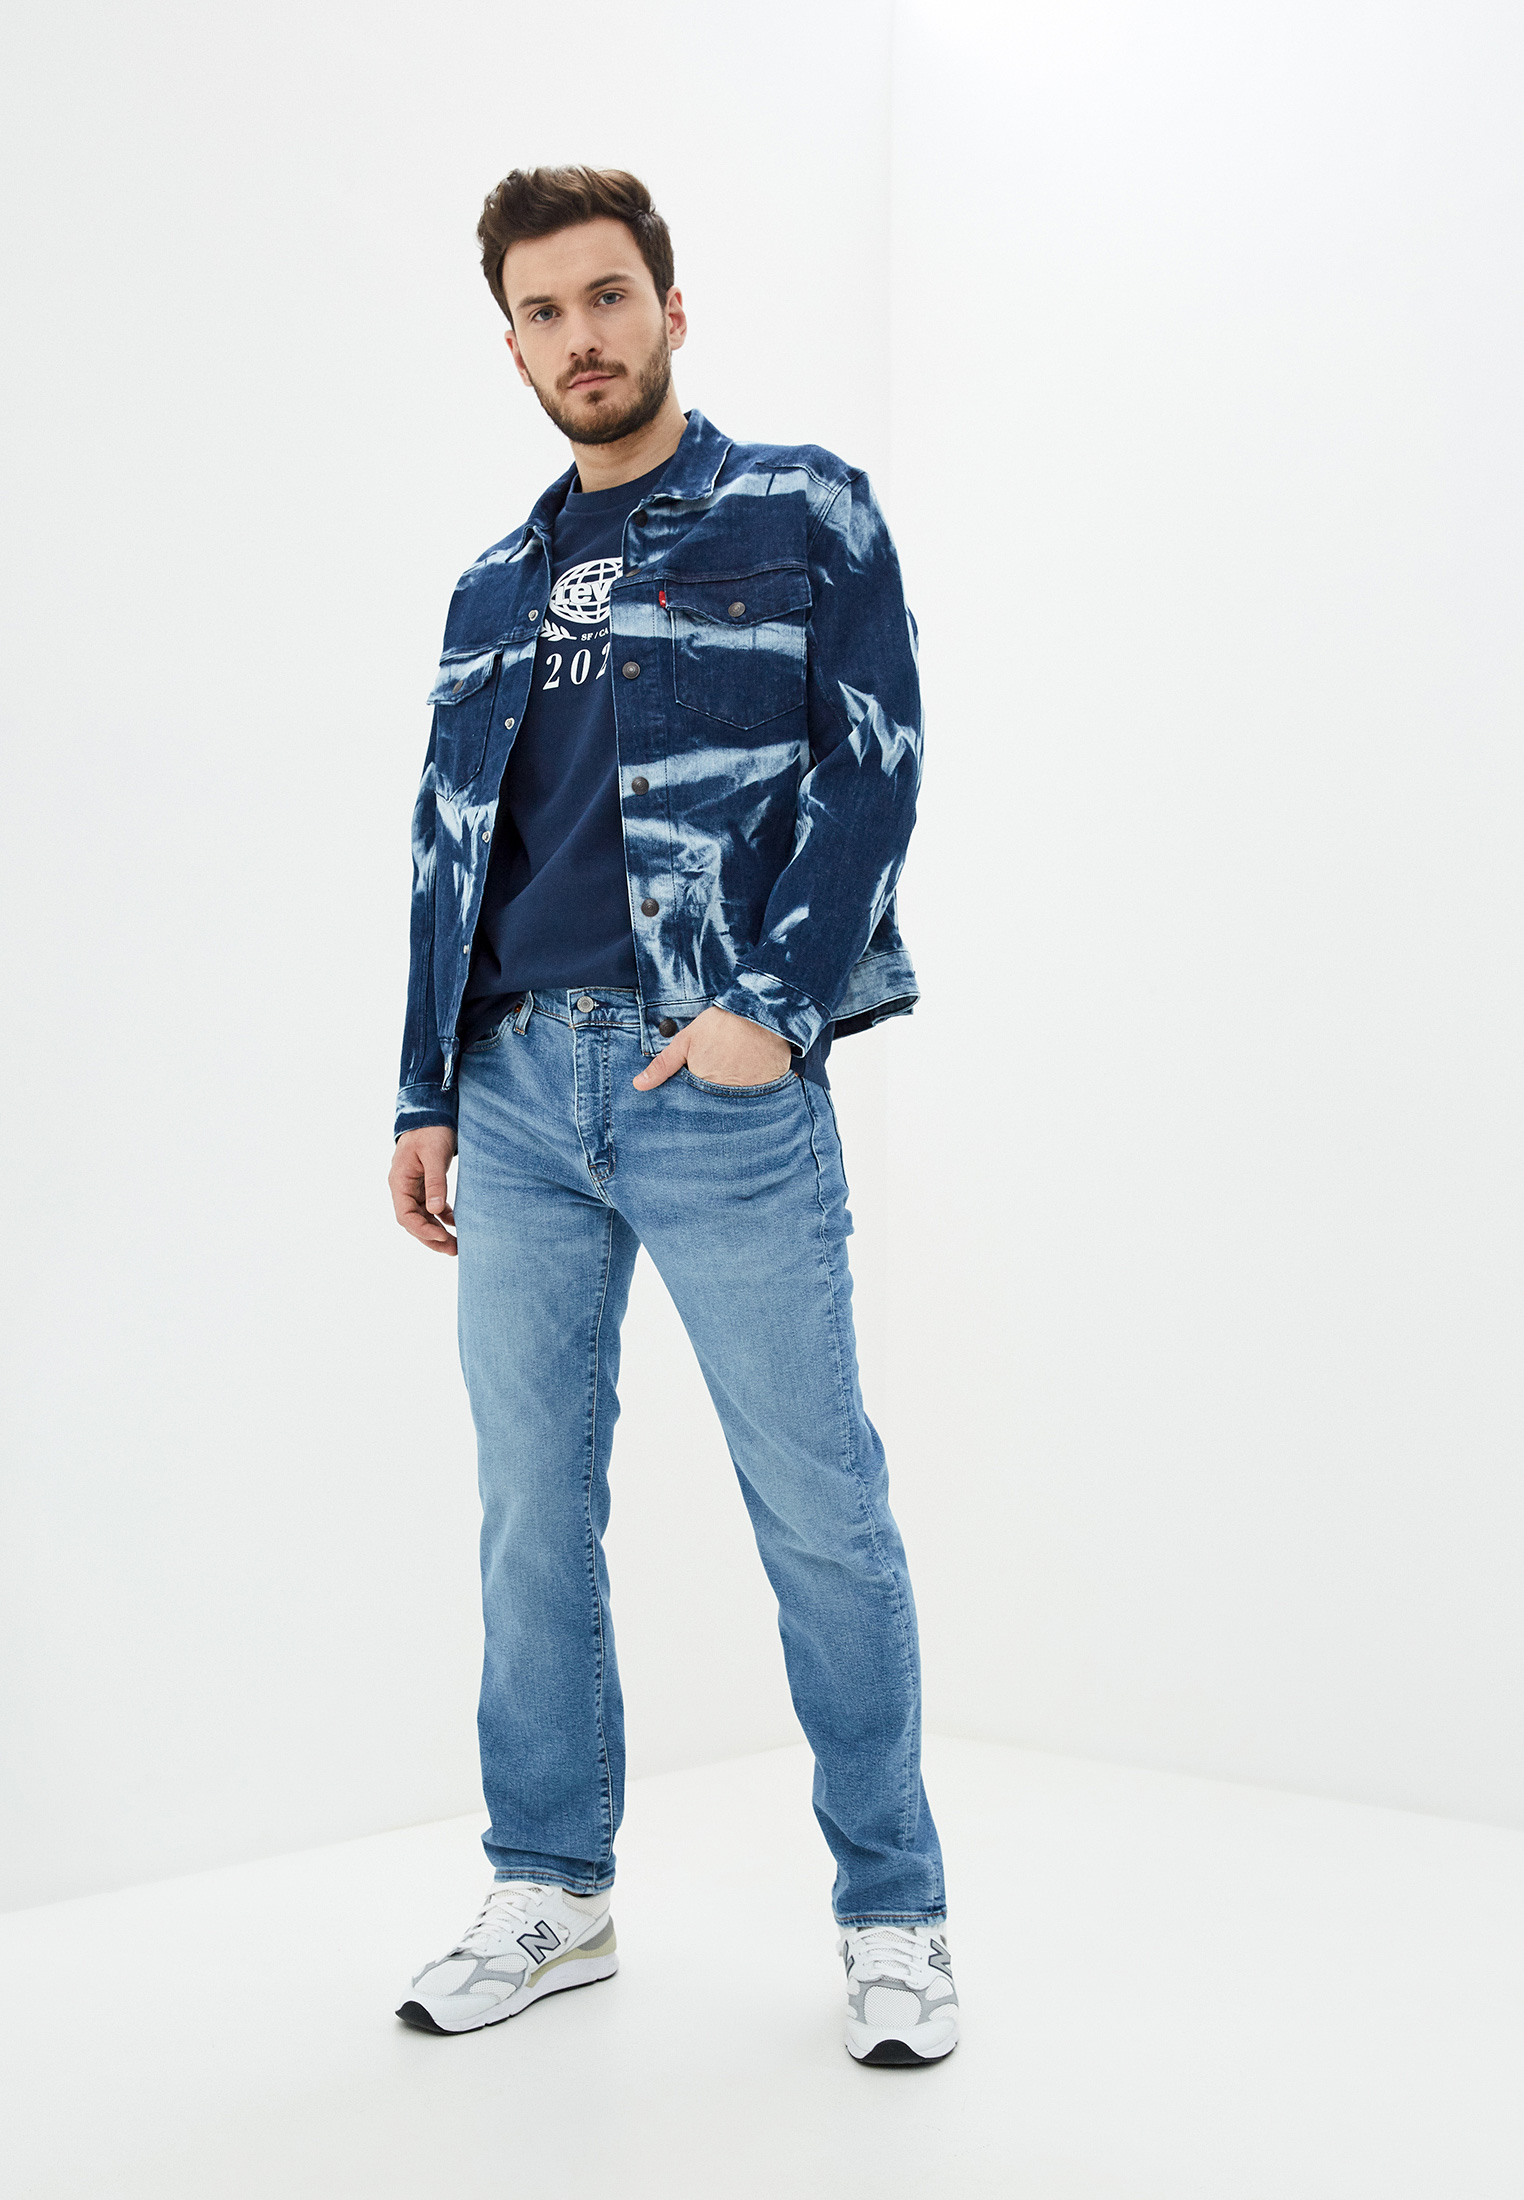 Джинсовые костюмы фото мужские: Мужской джинсовый костюм (45 фото): модели для лета и весны